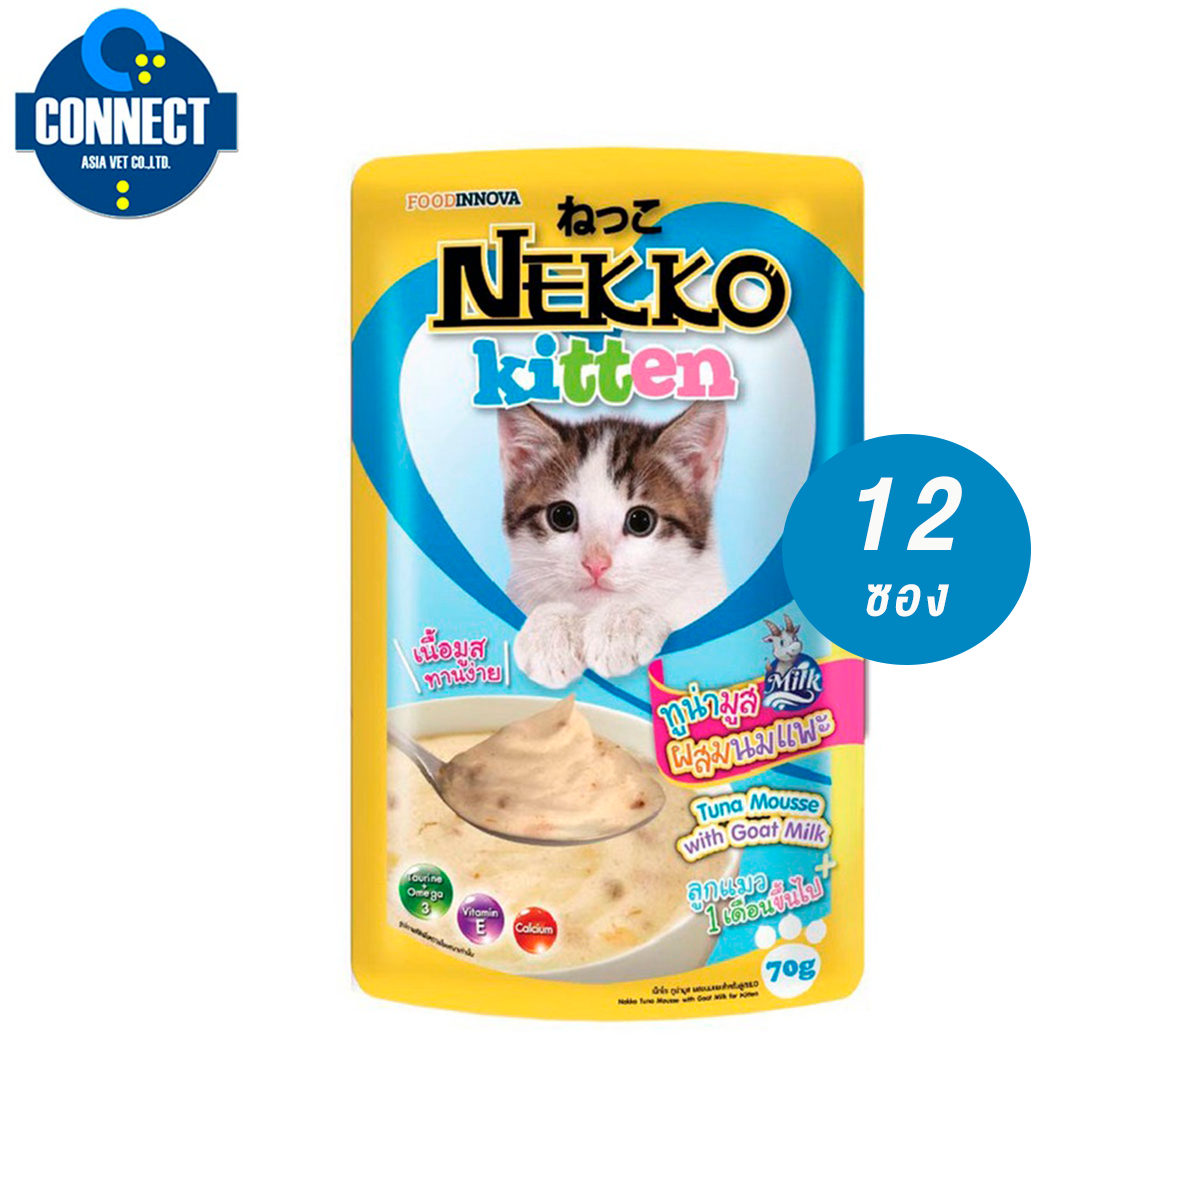 Nekko Kitten อาหารแมวเด็ก ทูน่ามูสผสมนมแพะ 70g. (สีฟ้า) จำนวน 12 ซอง.